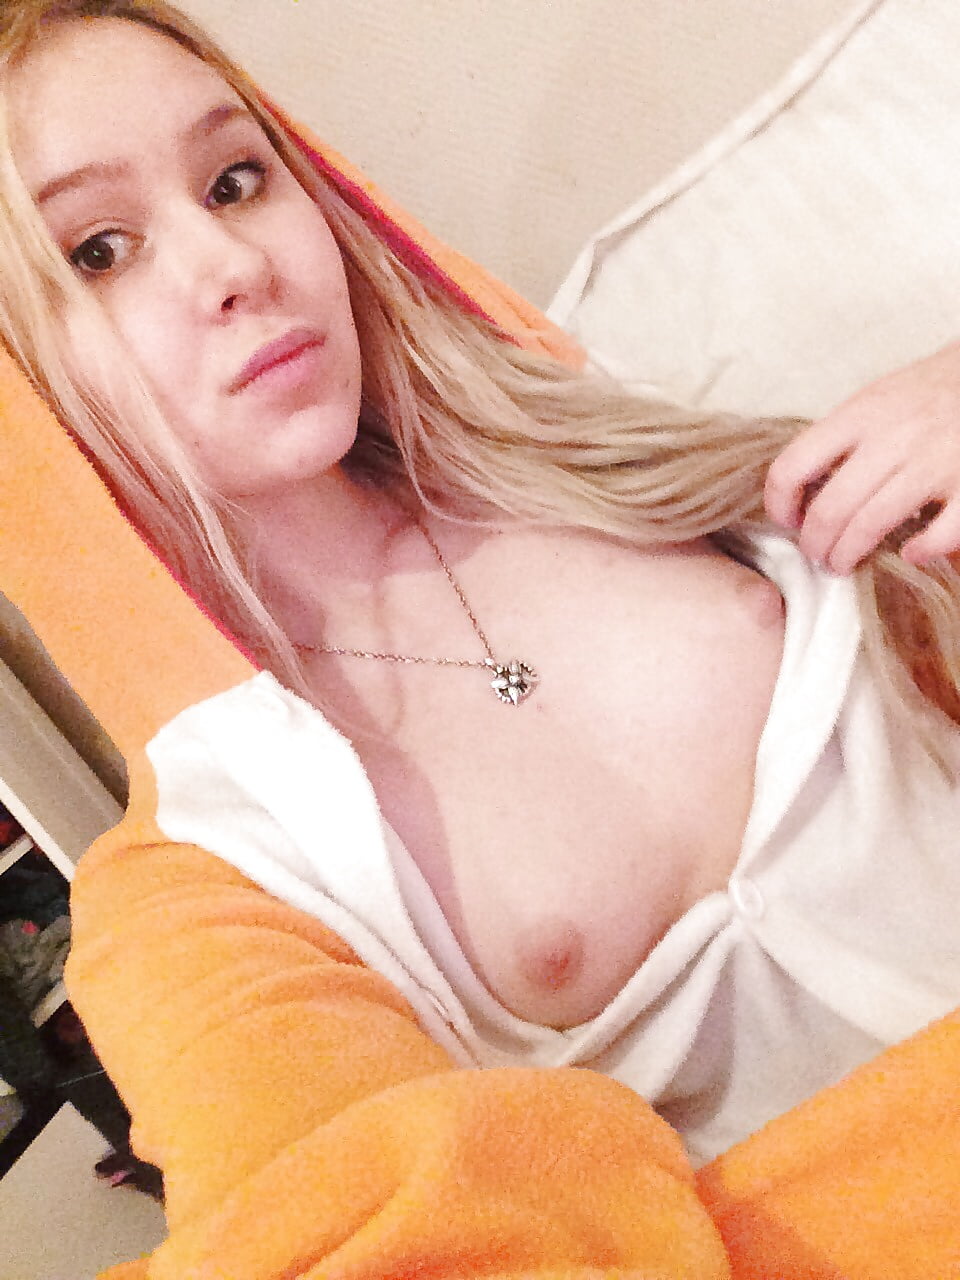 selfie blonde porn gallery